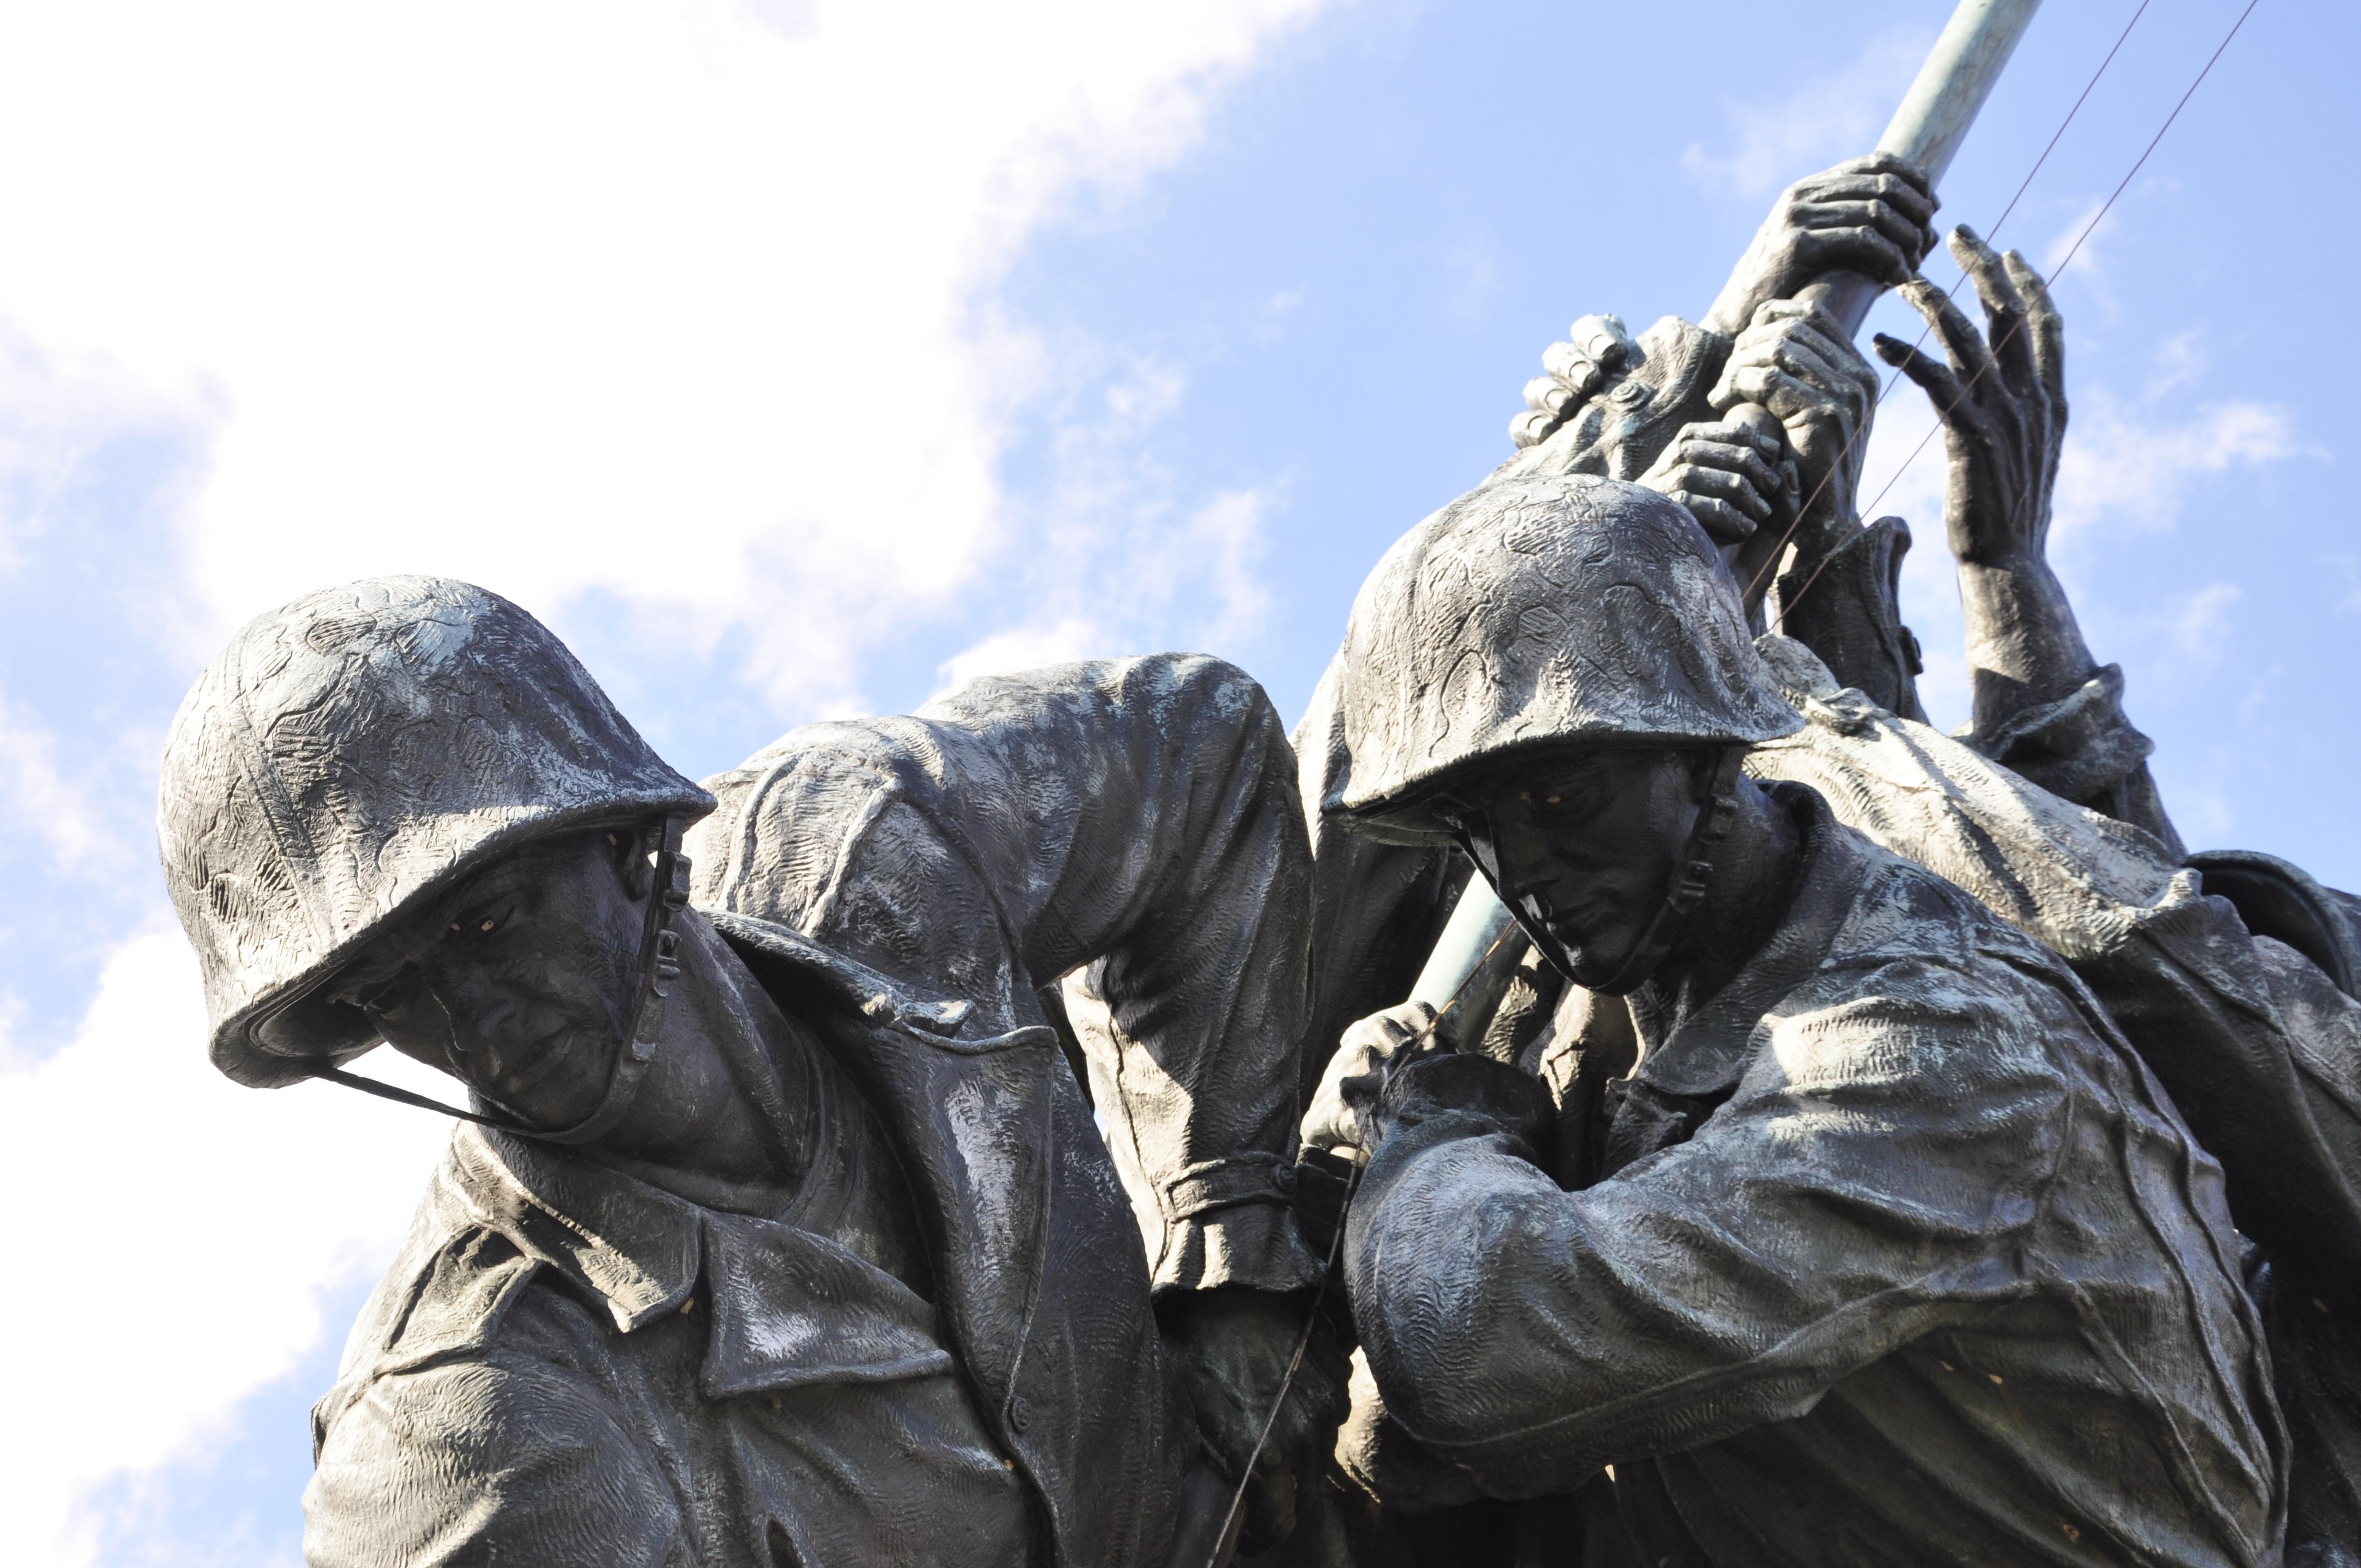 68th anniversary of Iwo Jima flag raising